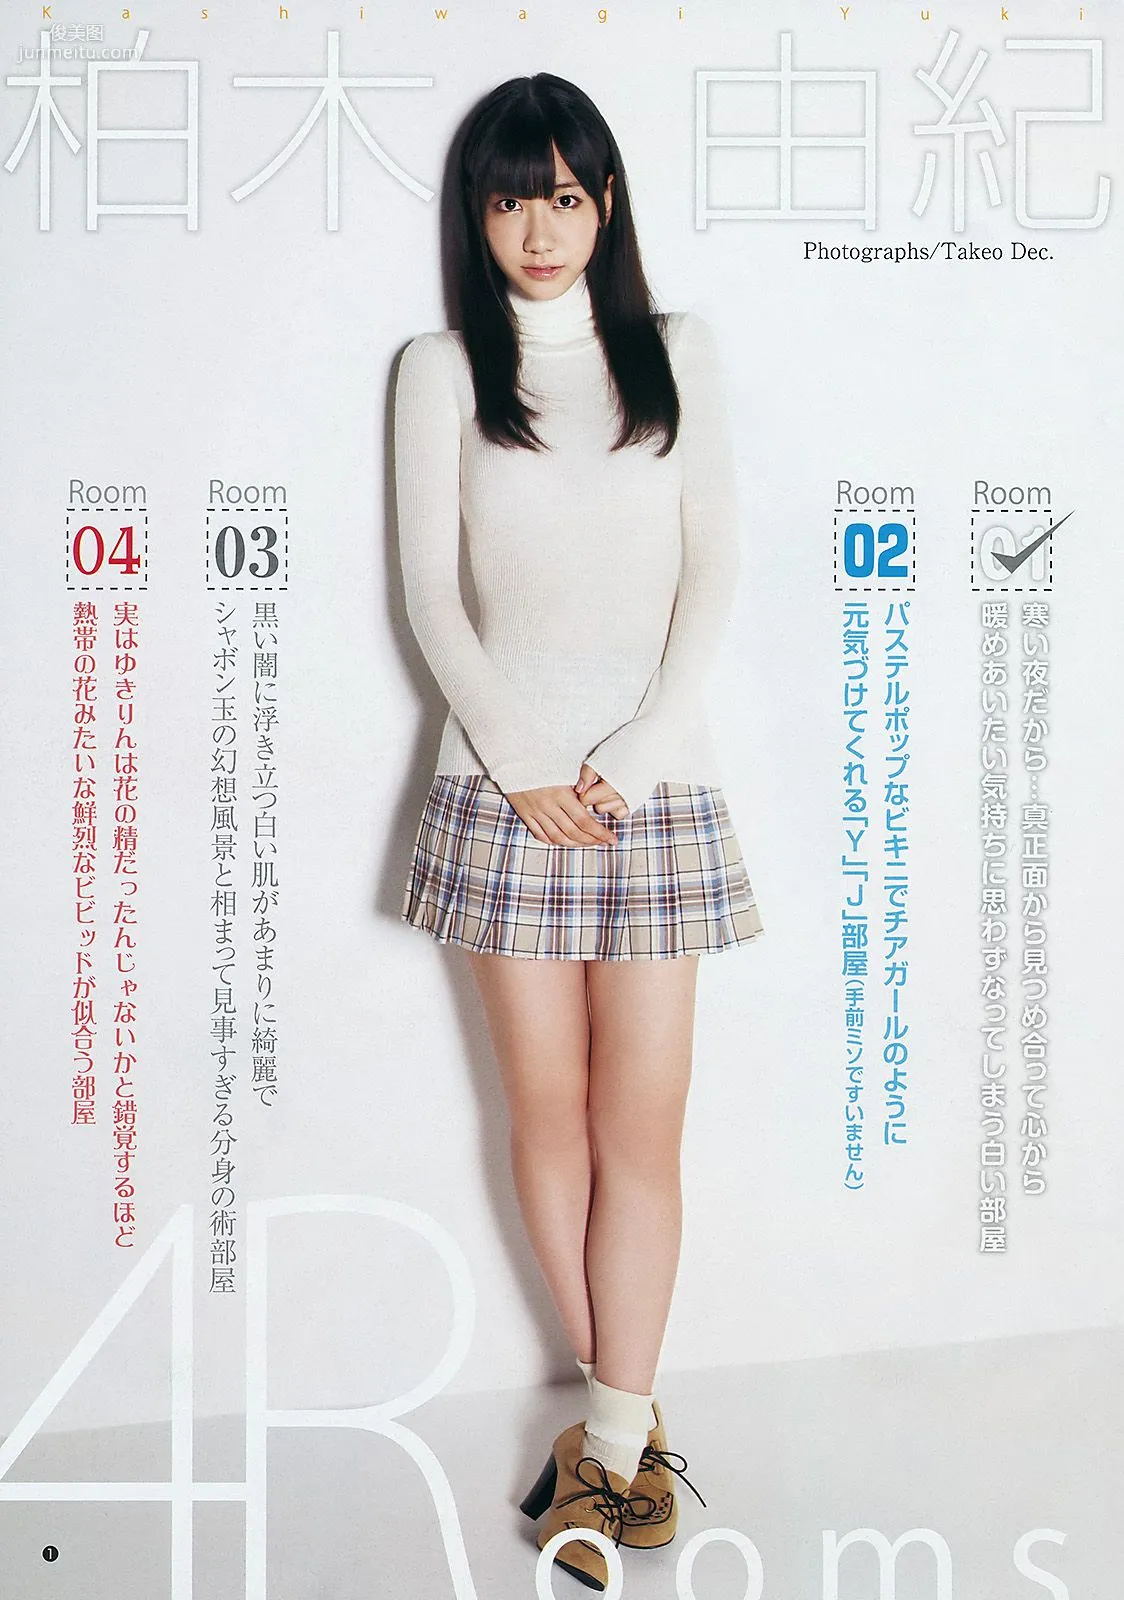 柏木由纪 広村美つ美 [Weekly Young Jump] 2011年No.51 写真杂志2